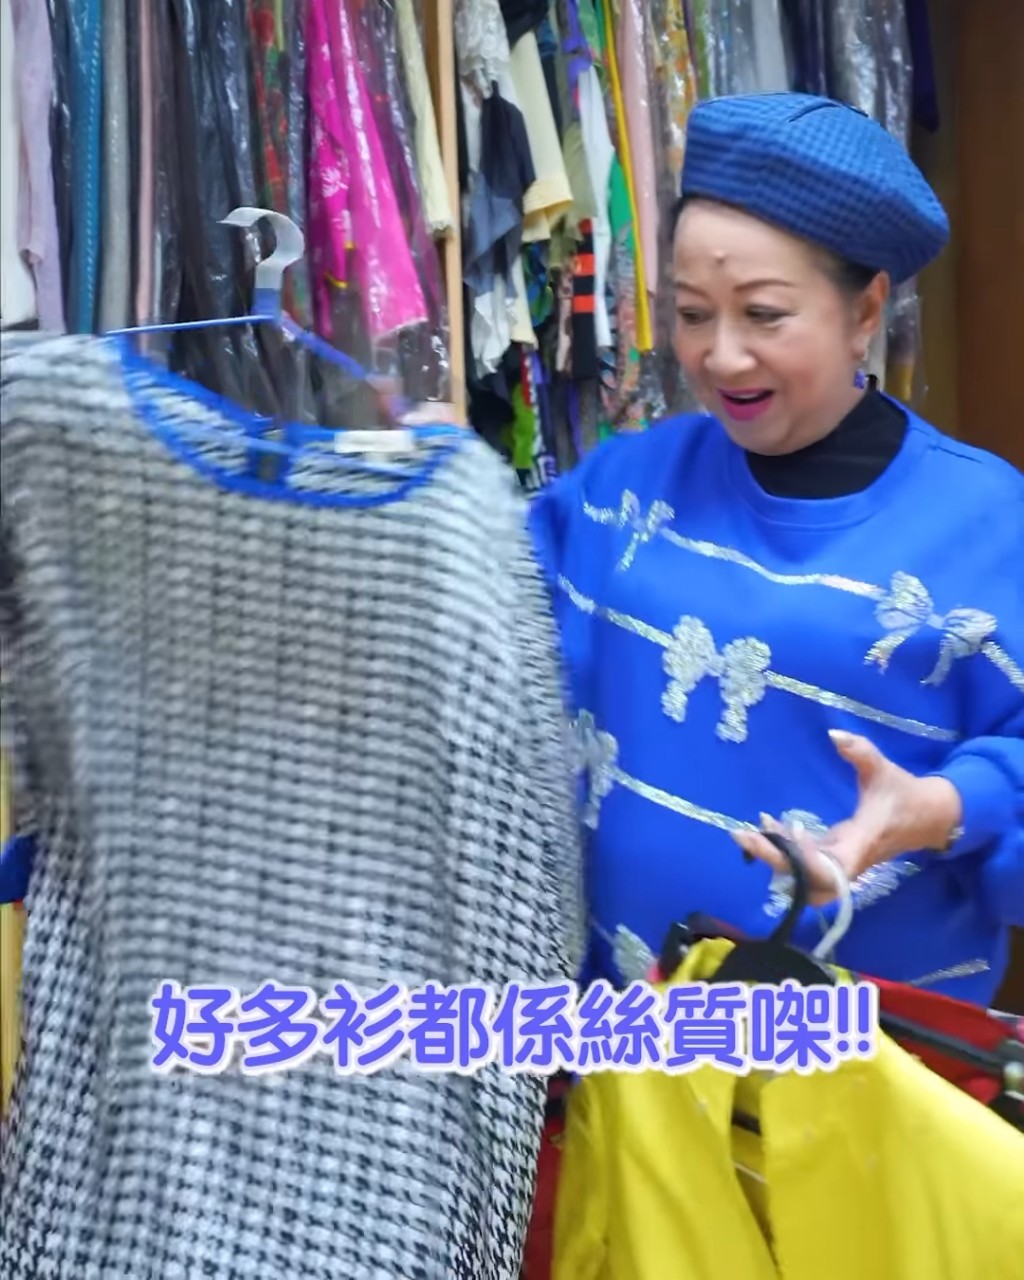 薛家燕家中有很多衣物，早前举行义卖。